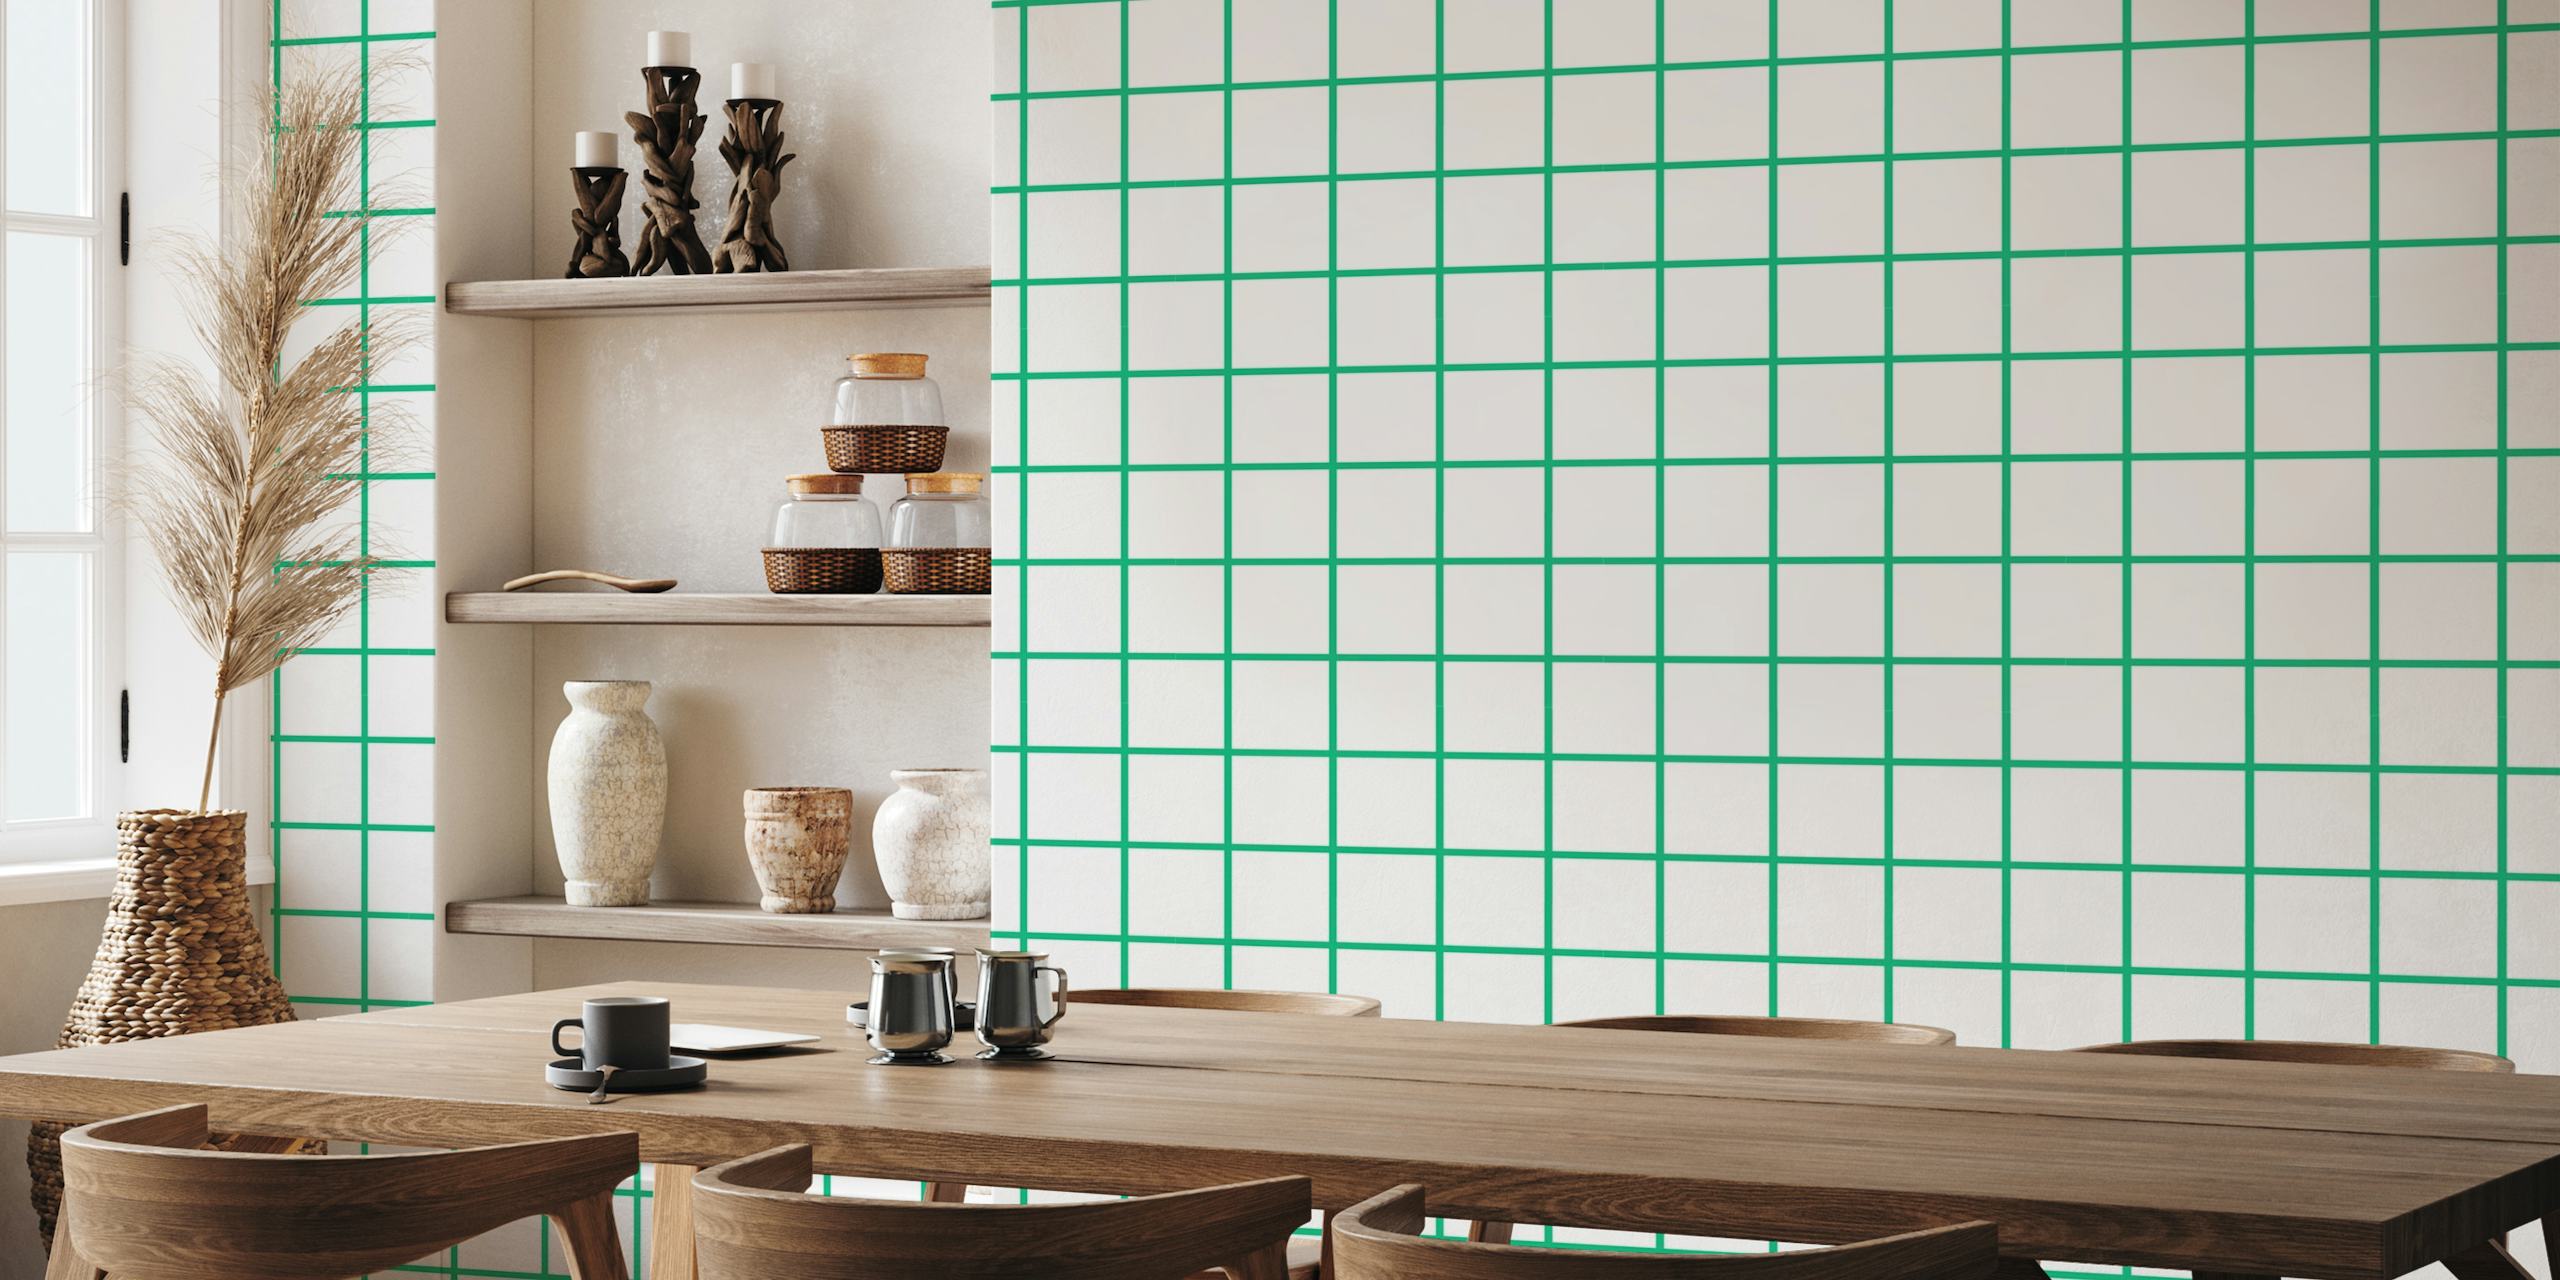 Um fotomural vinílico de parede com padrão de grade com linhas verdes em um fundo branco, dando uma aparência moderna e limpa.